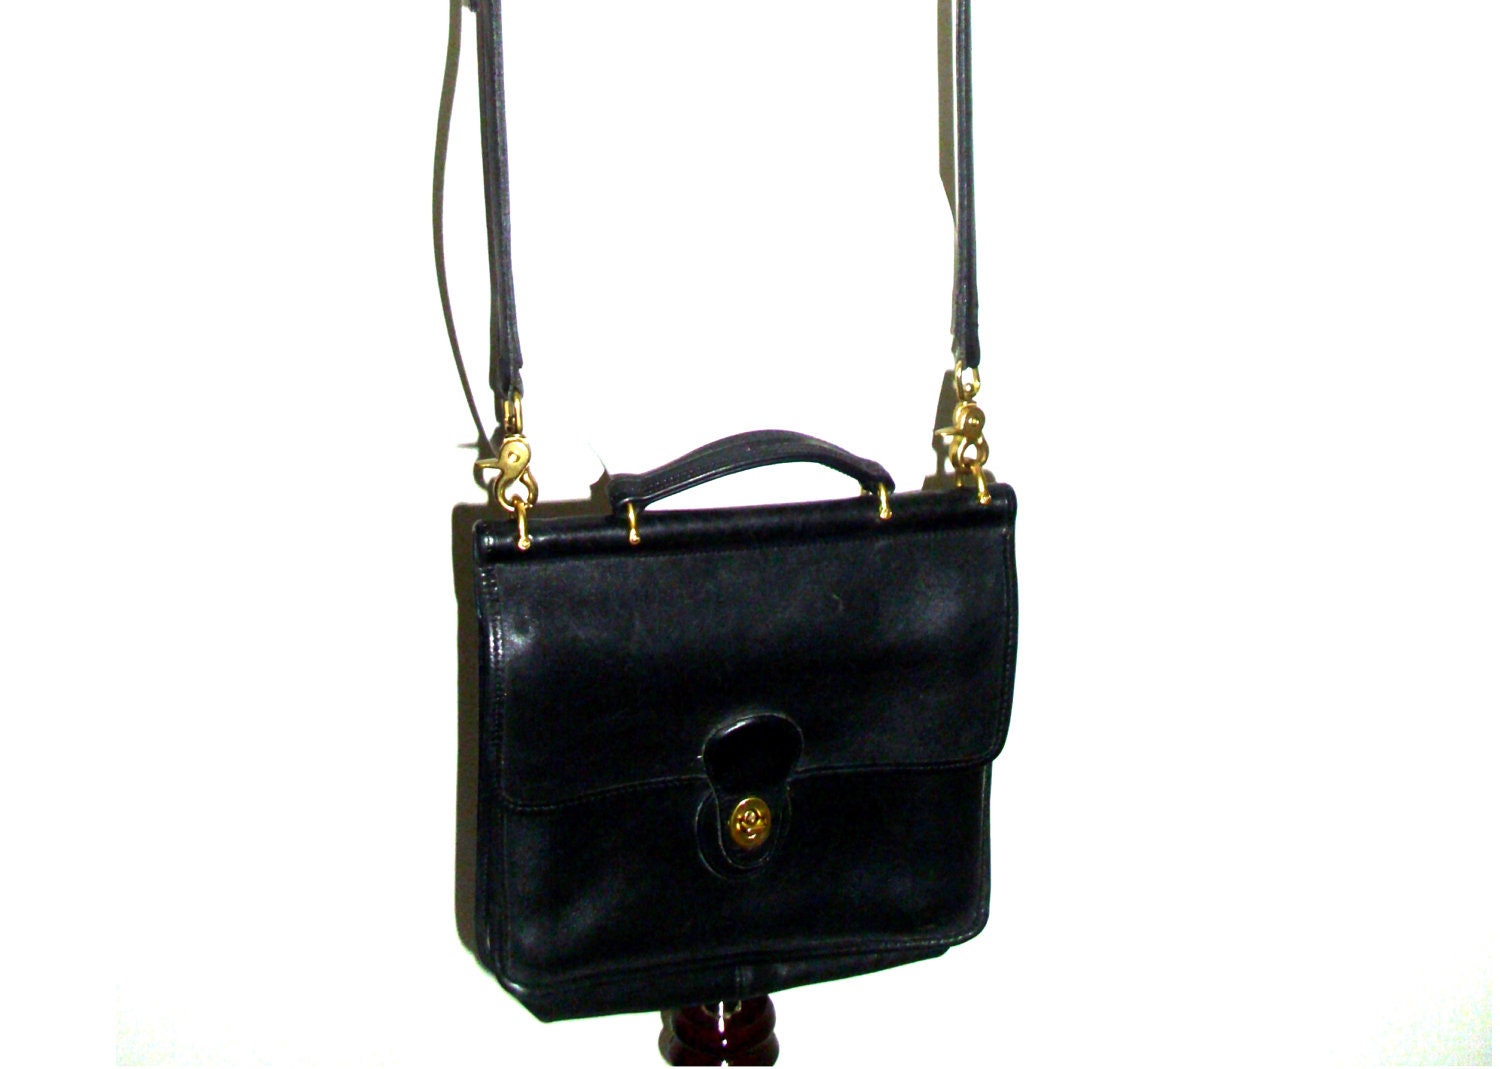 Vintage Coach handbag shoulder satchel by vintageclothingstore